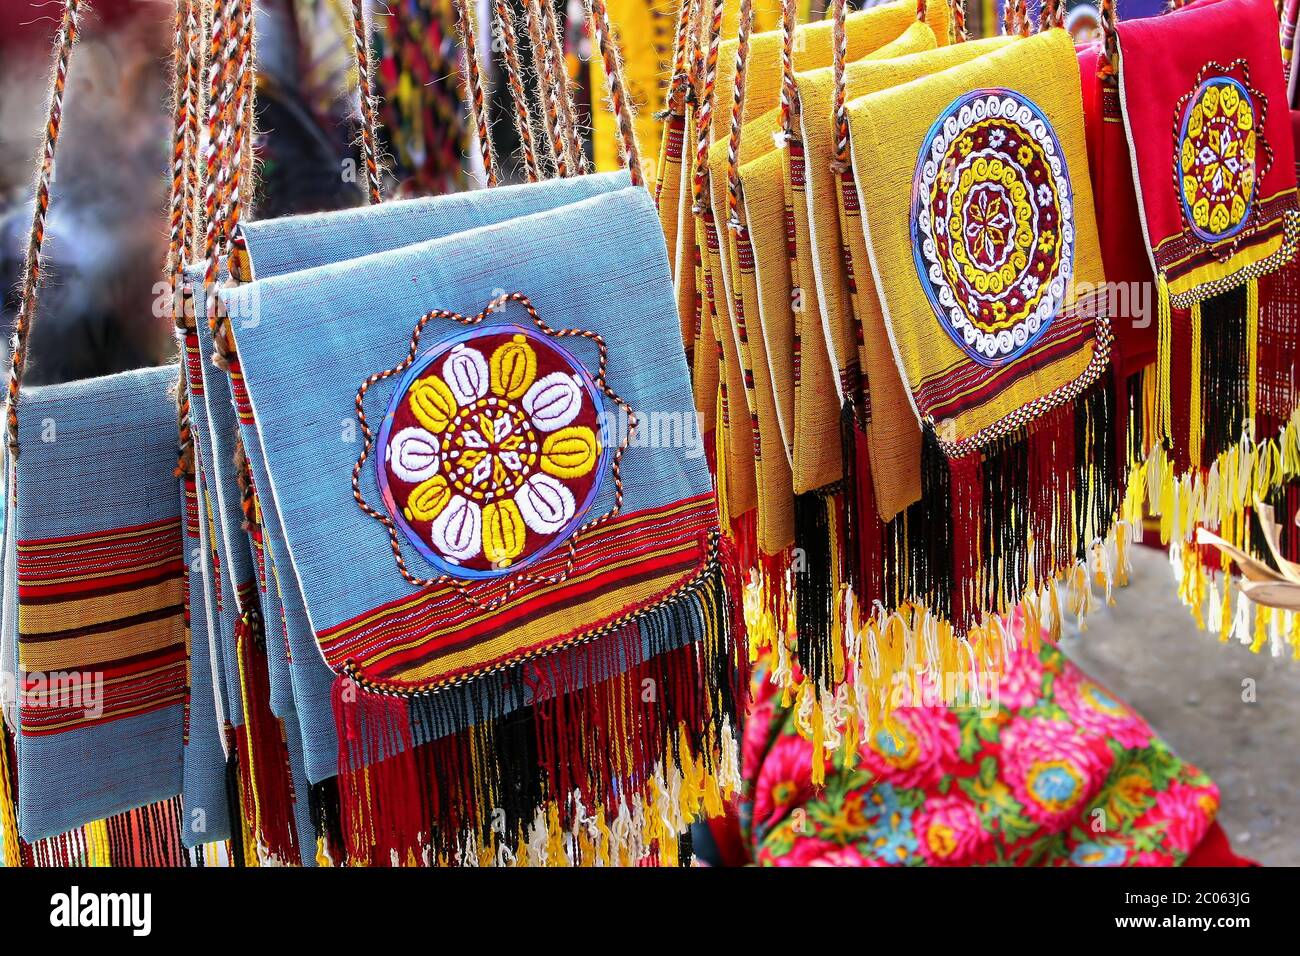 Oggetti bazaar orientale - borse decorative fatte a mano. Turkmenistan. Mercato Ashkhabad. Foto Stock